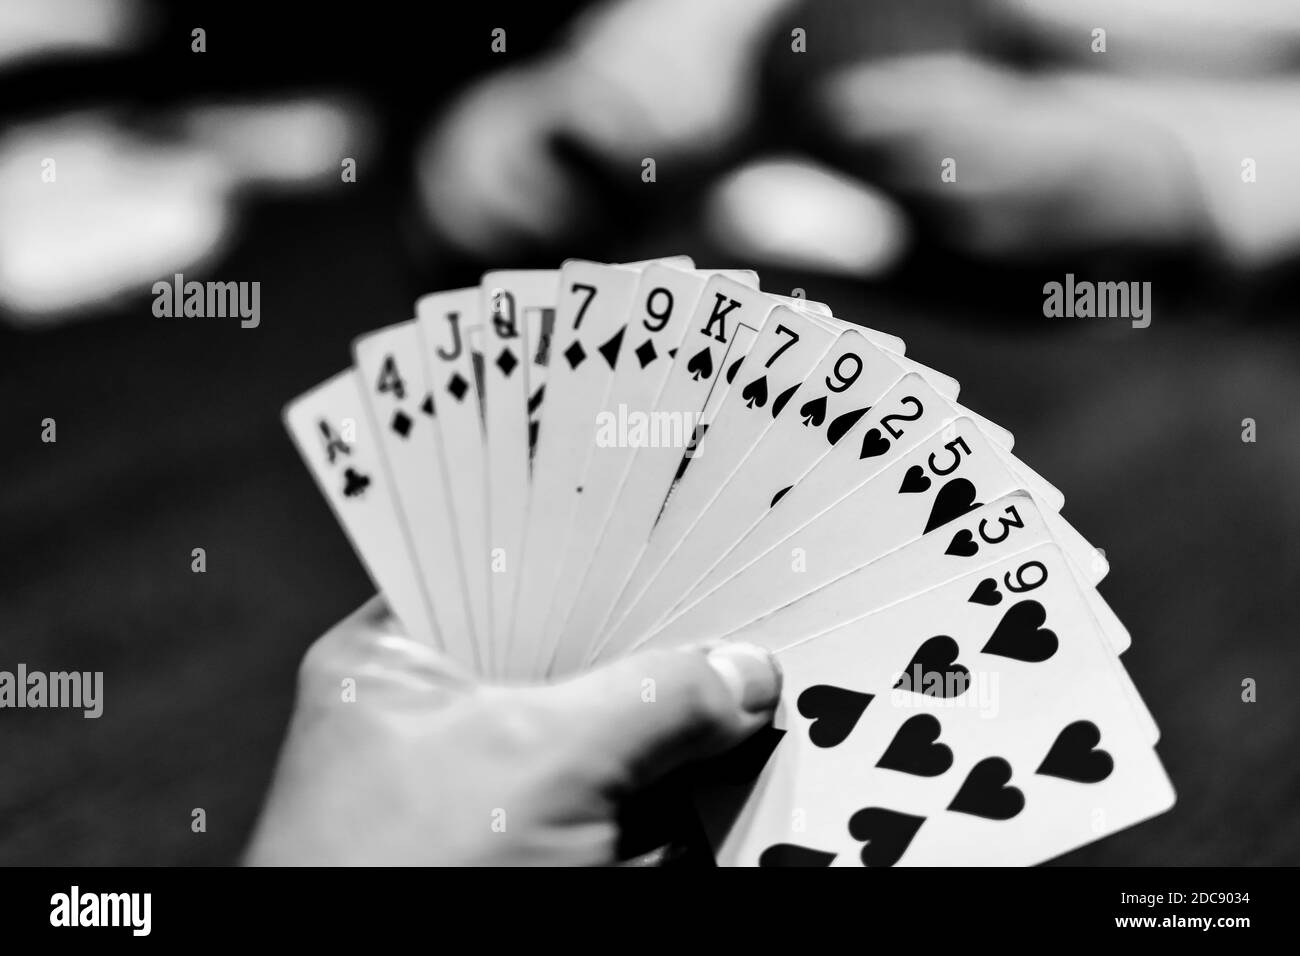 Menschliche Hand hält Spielkarten spielen Kartenspiel Stockfoto